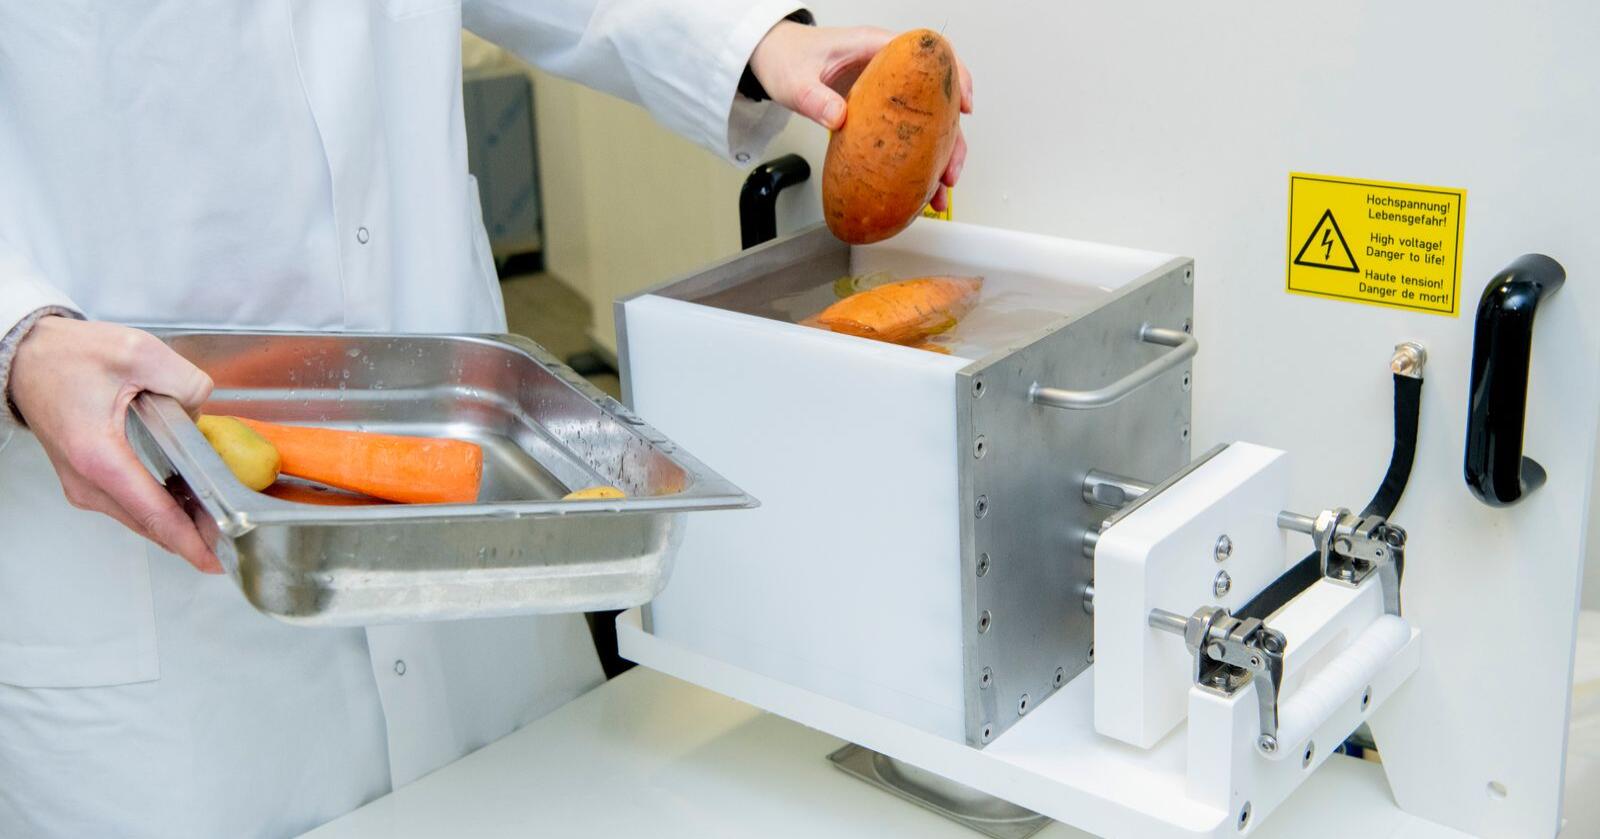 Søtpotet og gulrot til PEF-behandling: Innsatsen settes i en maskin som behandler mat med pulserende elektriske felt (PEF). (Foto: Jan Inge Haga / Nofima)